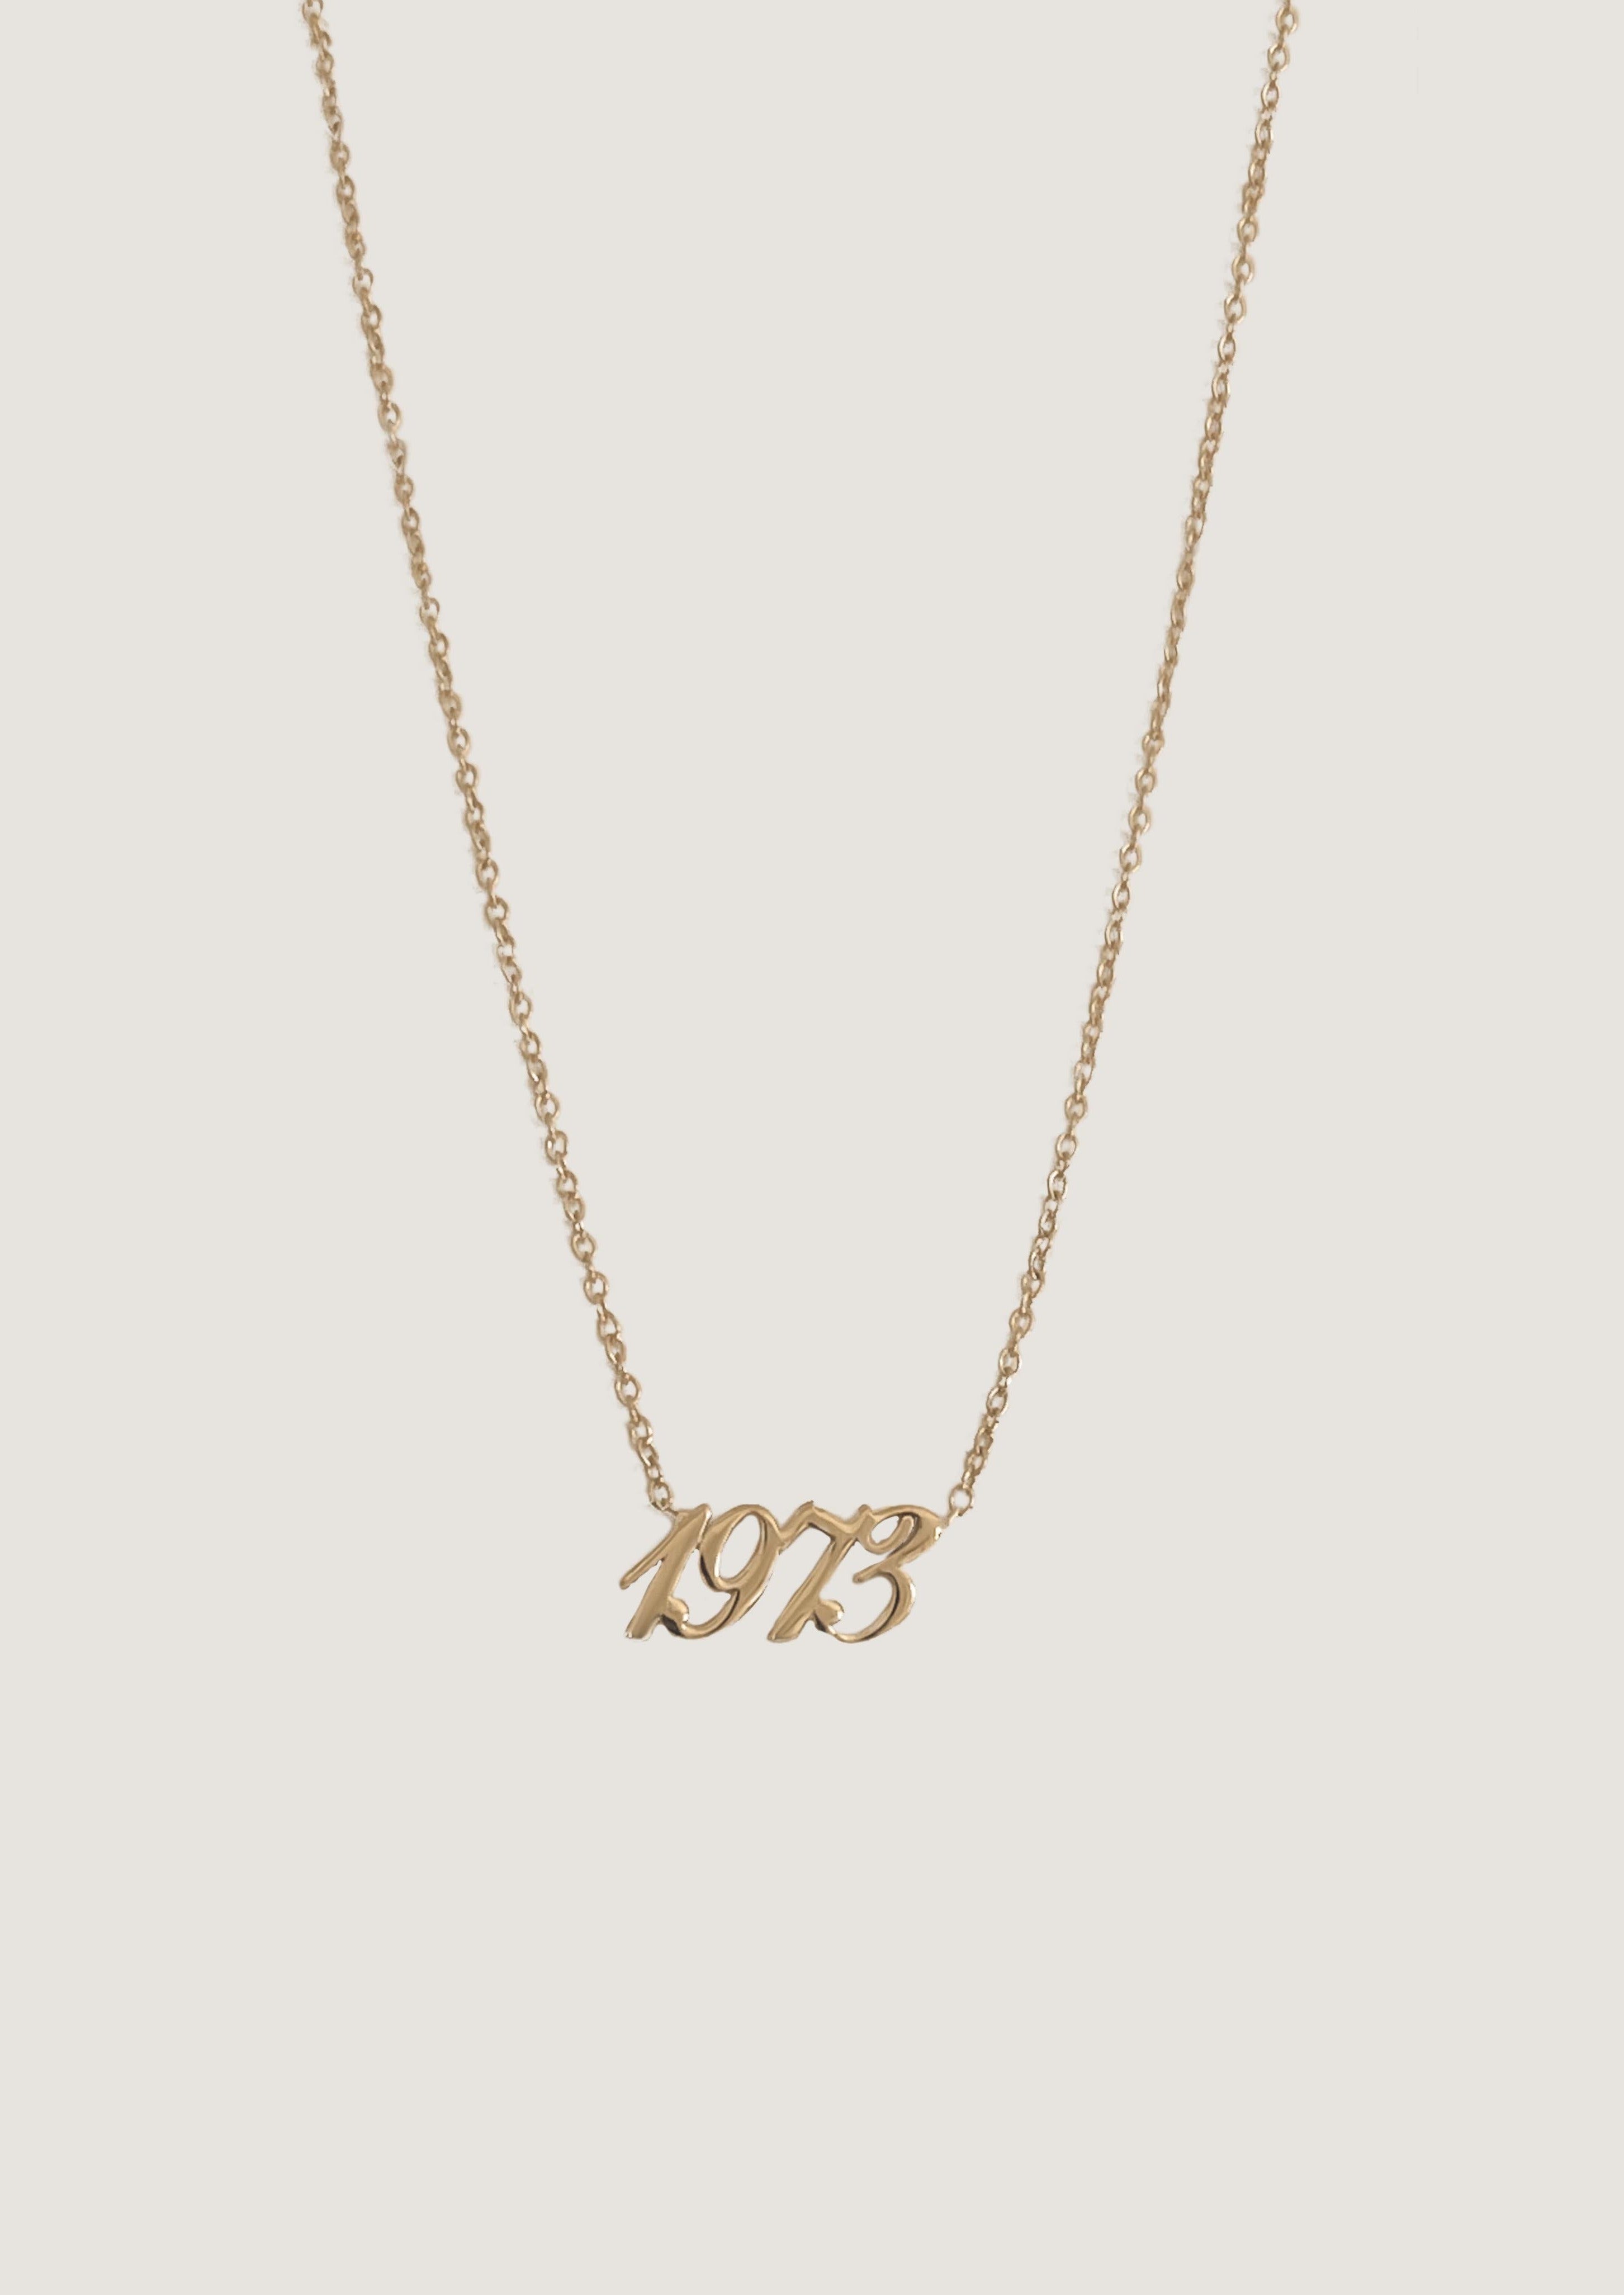 alt="1973 14K gold necklace"